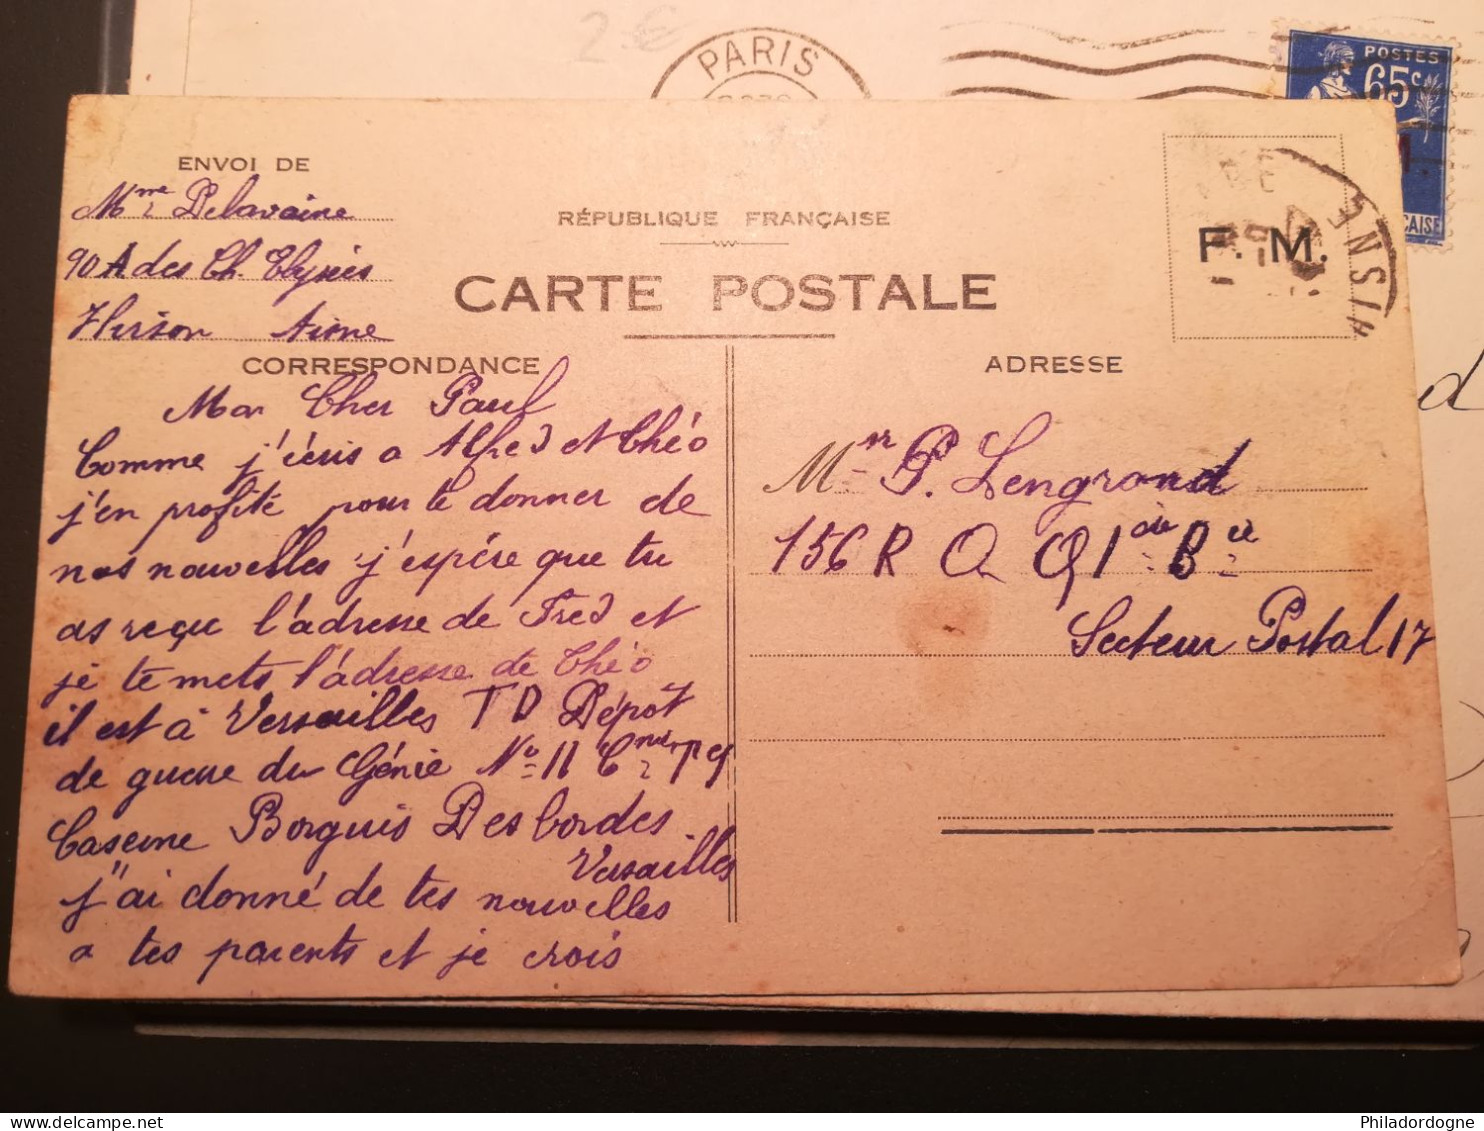 France - Lot de 83 documents en FM entre 1939 et 1945 à trier - poids 246 grammes